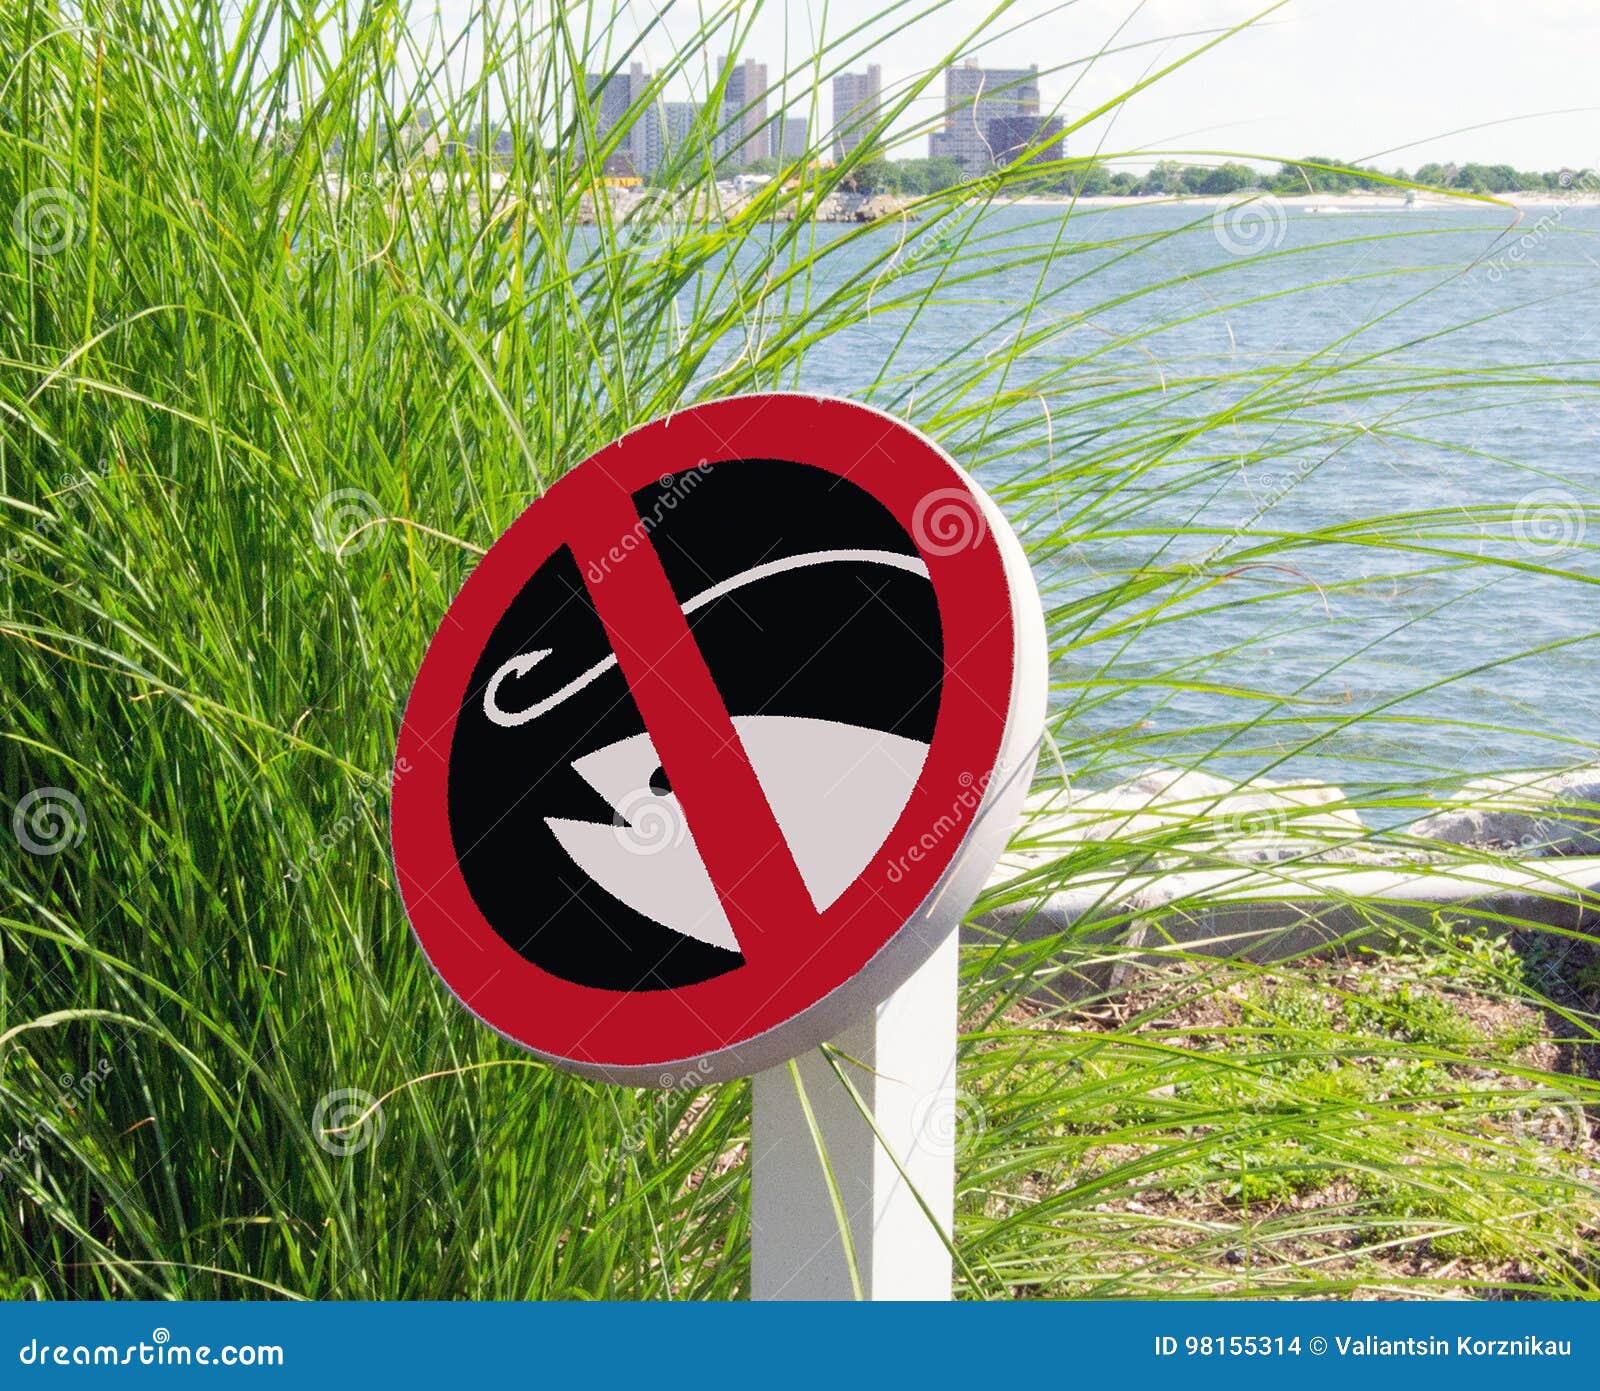 Какой знак можно встретить на берегу водоема. Рыбалка запрещена. Знаки у водоемов. Ловля рыбы запрещена. Рыбалка запрещена табличка.